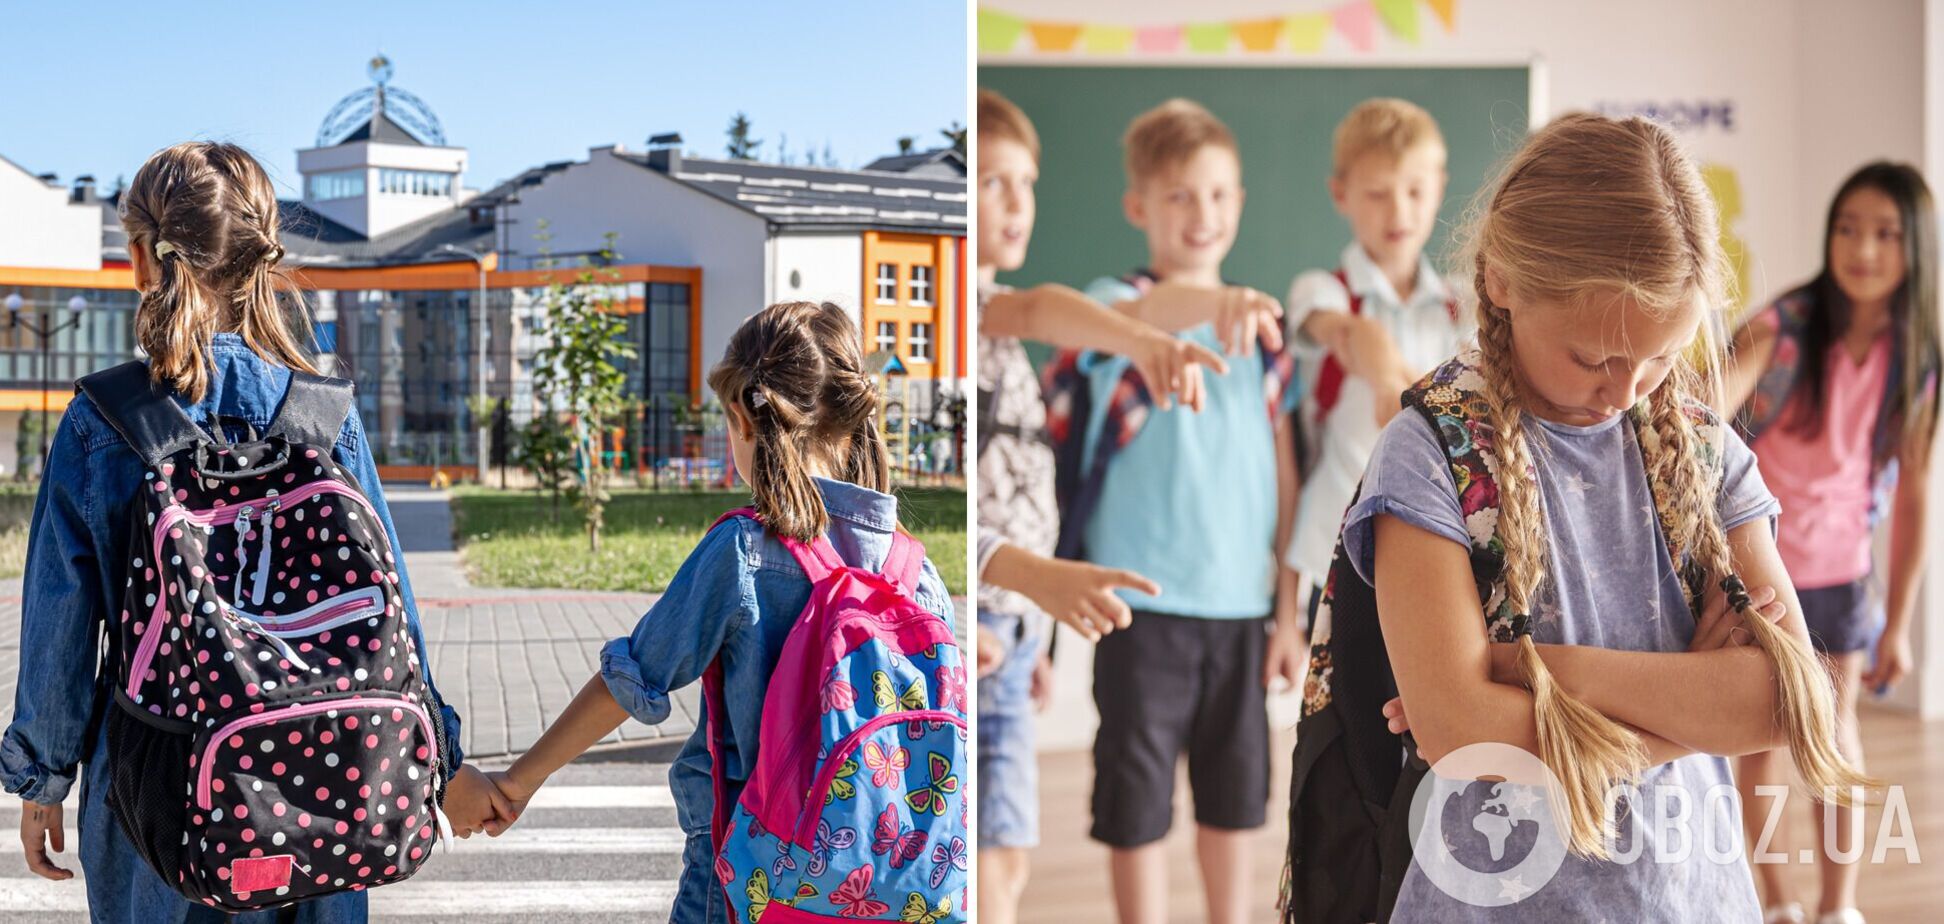 Работает треугольник: почему в школах Дании один из самых низких показателей буллинга в Европе